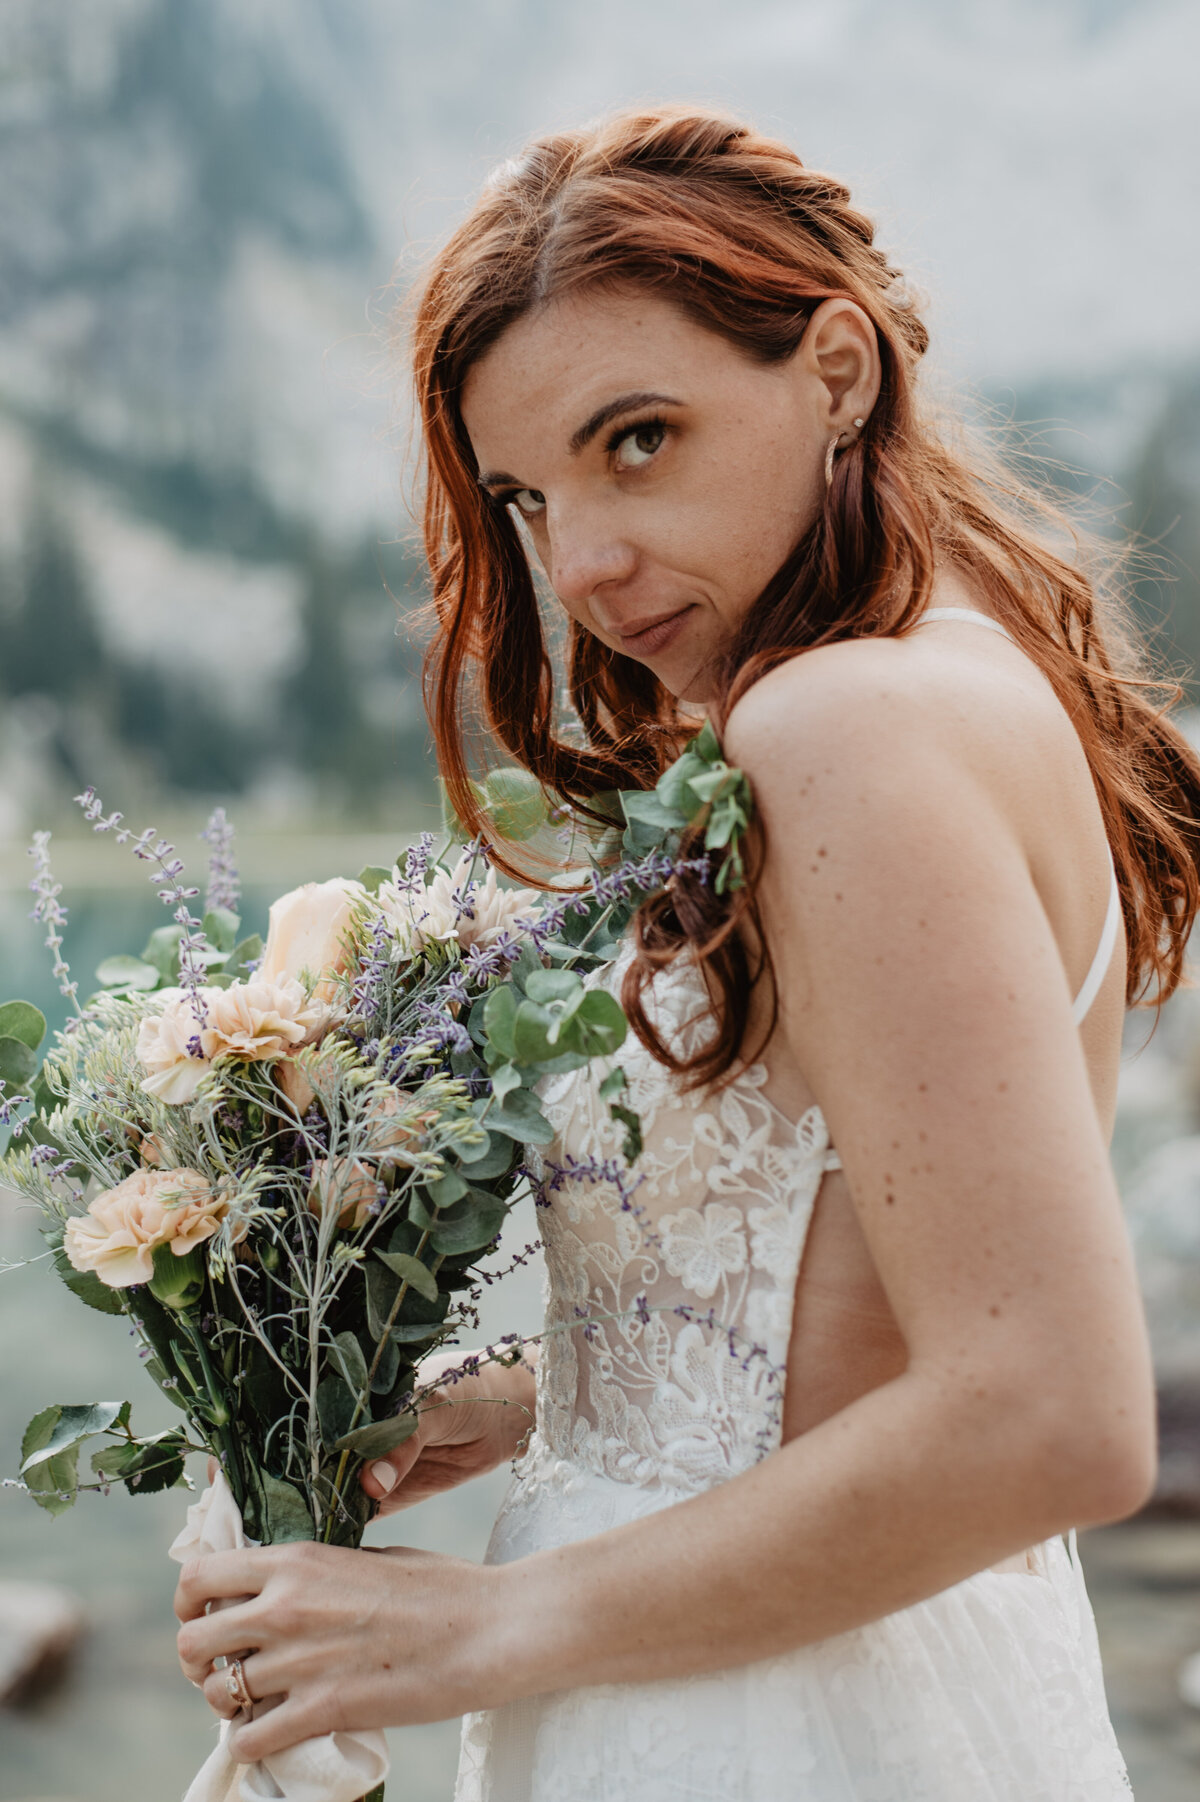 Jackson Hole Photographers capture bride holding bouquet